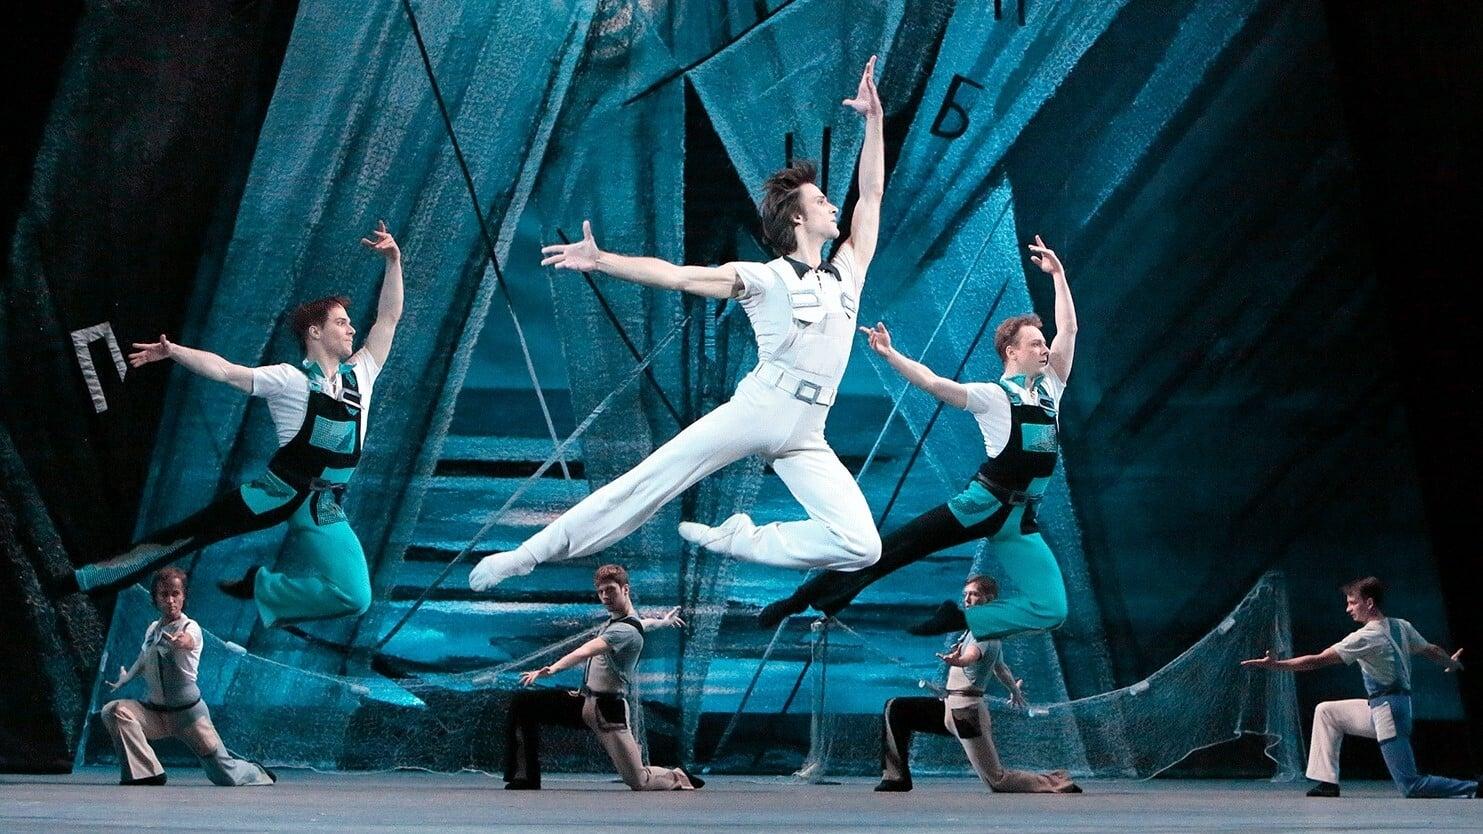 Bolshoi Ballet: The Golden Age backdrop